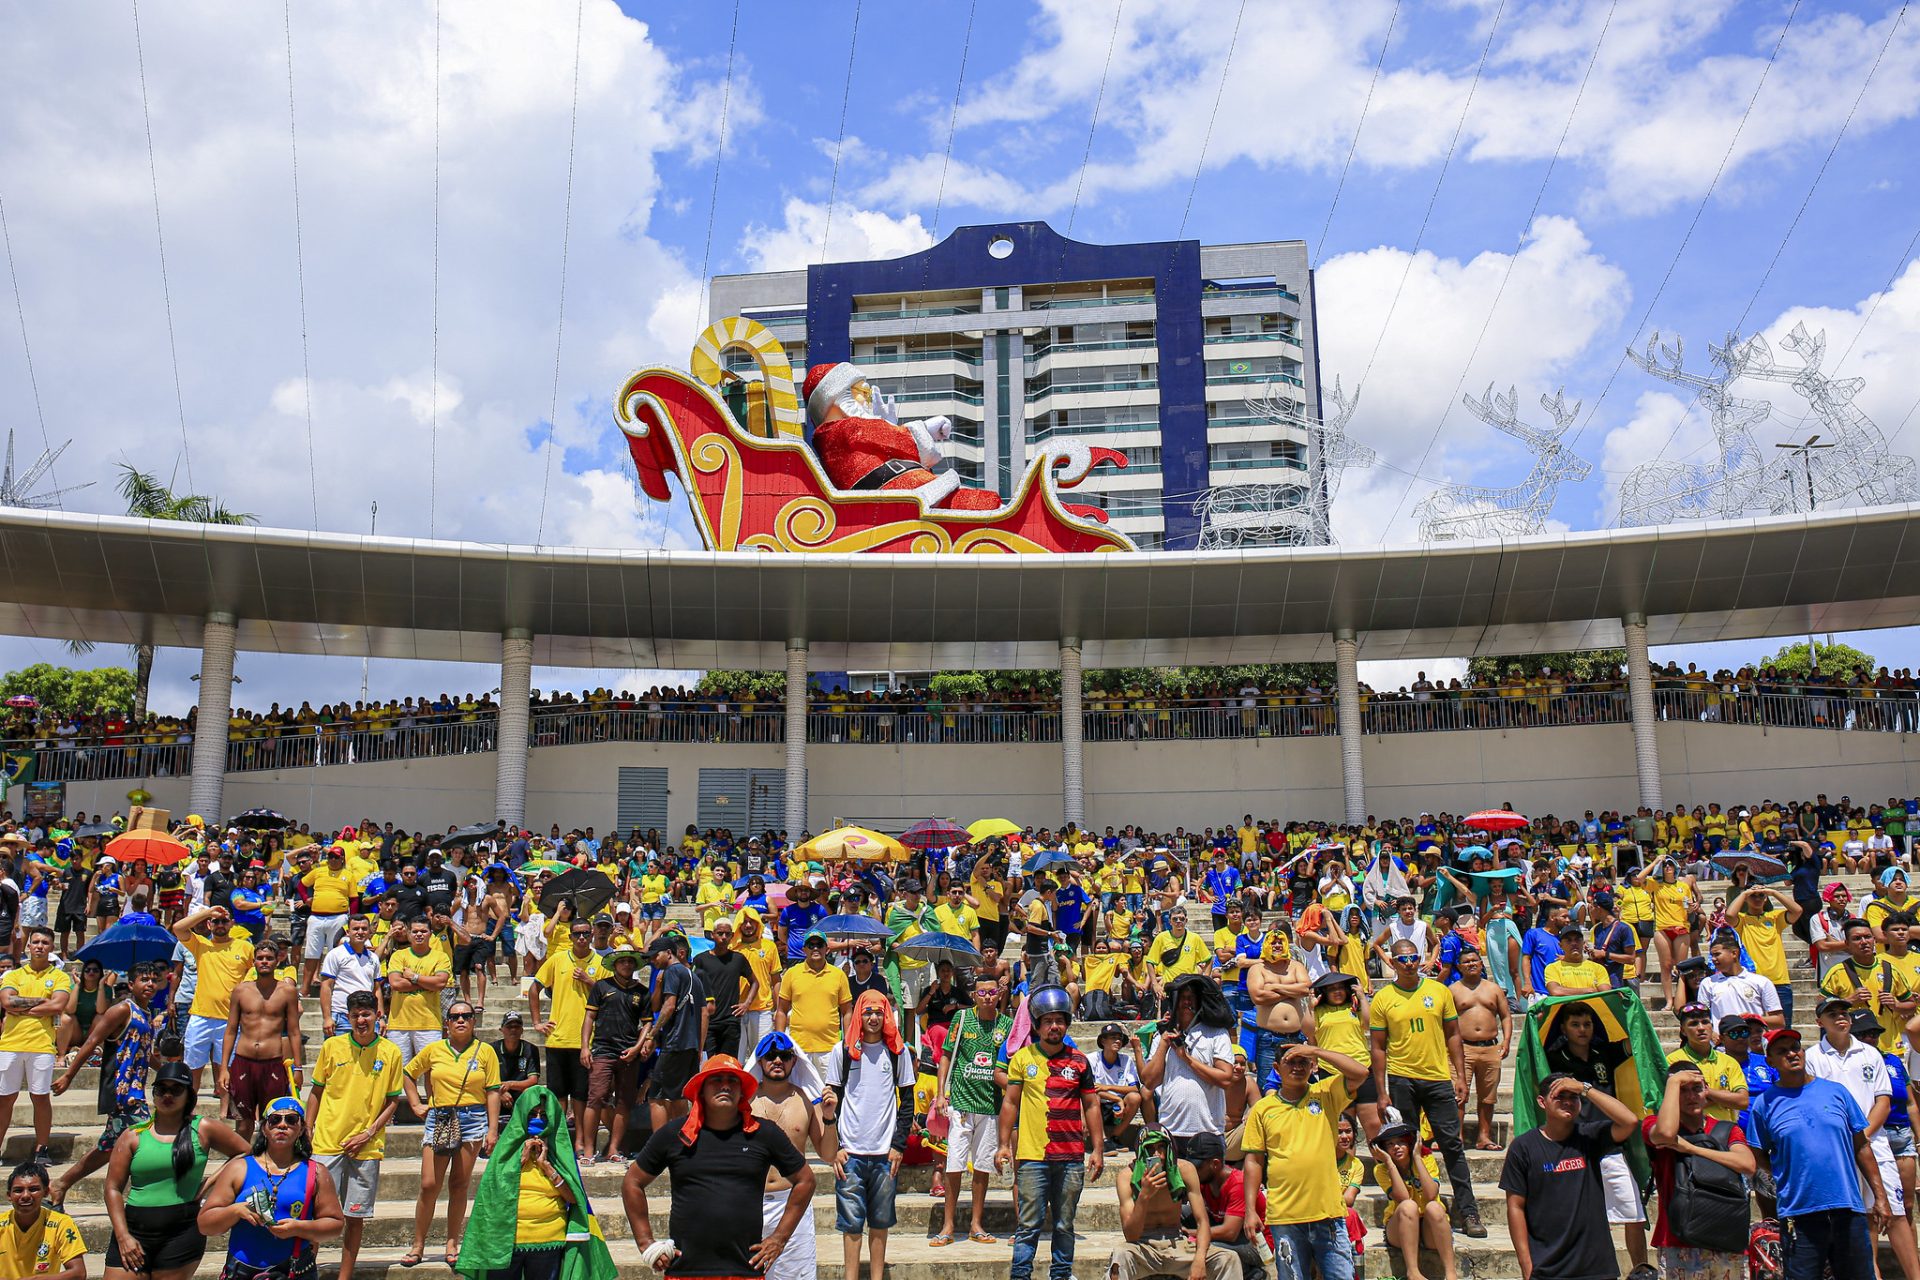 Torcida pelo Brasil reuniu milhares em locais públicos de transmissão dos jogos da Copa do Mundo - Foto: Antonio Pereira/Manauscult